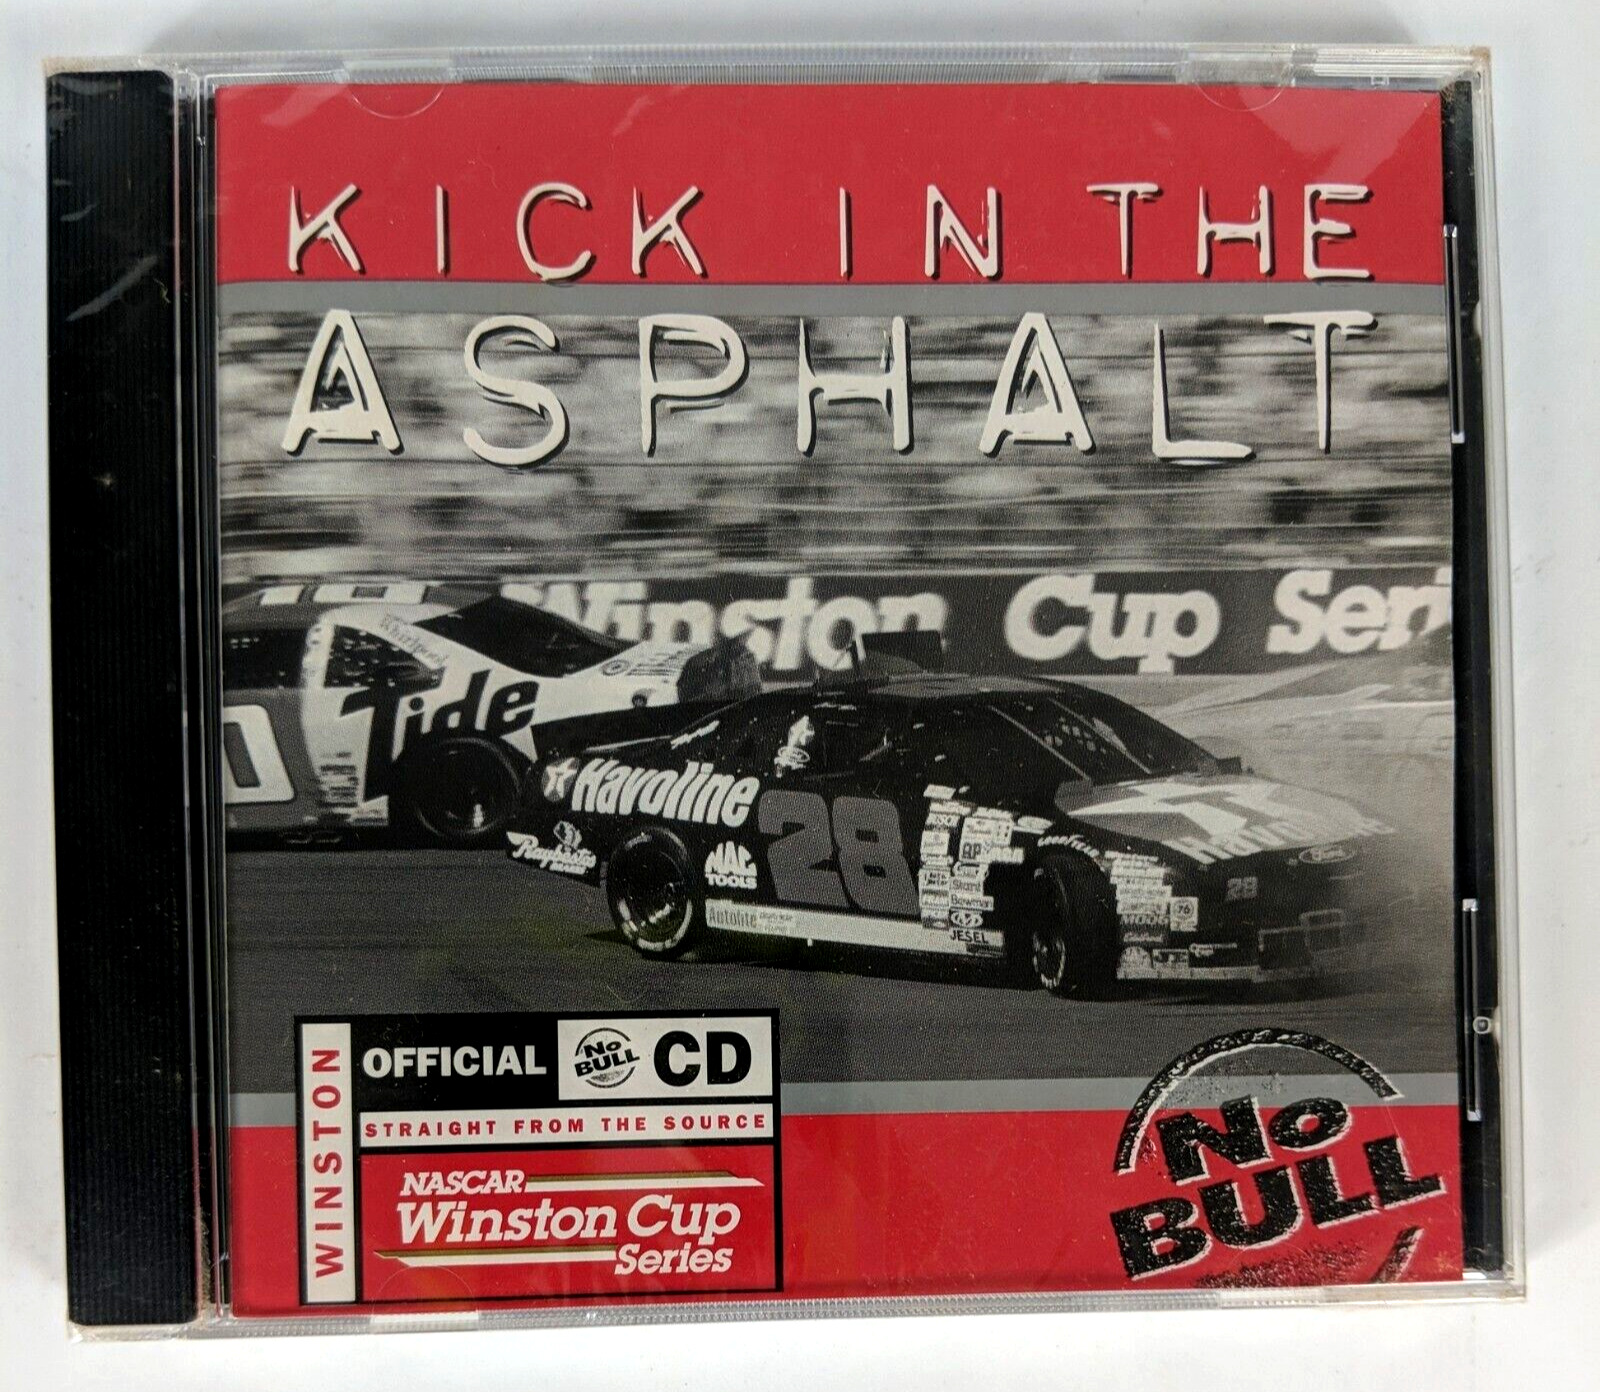 Vintage Sealed: Kick in the Asphalt No Bull CD, 1997 Winston Cup, NASCAR